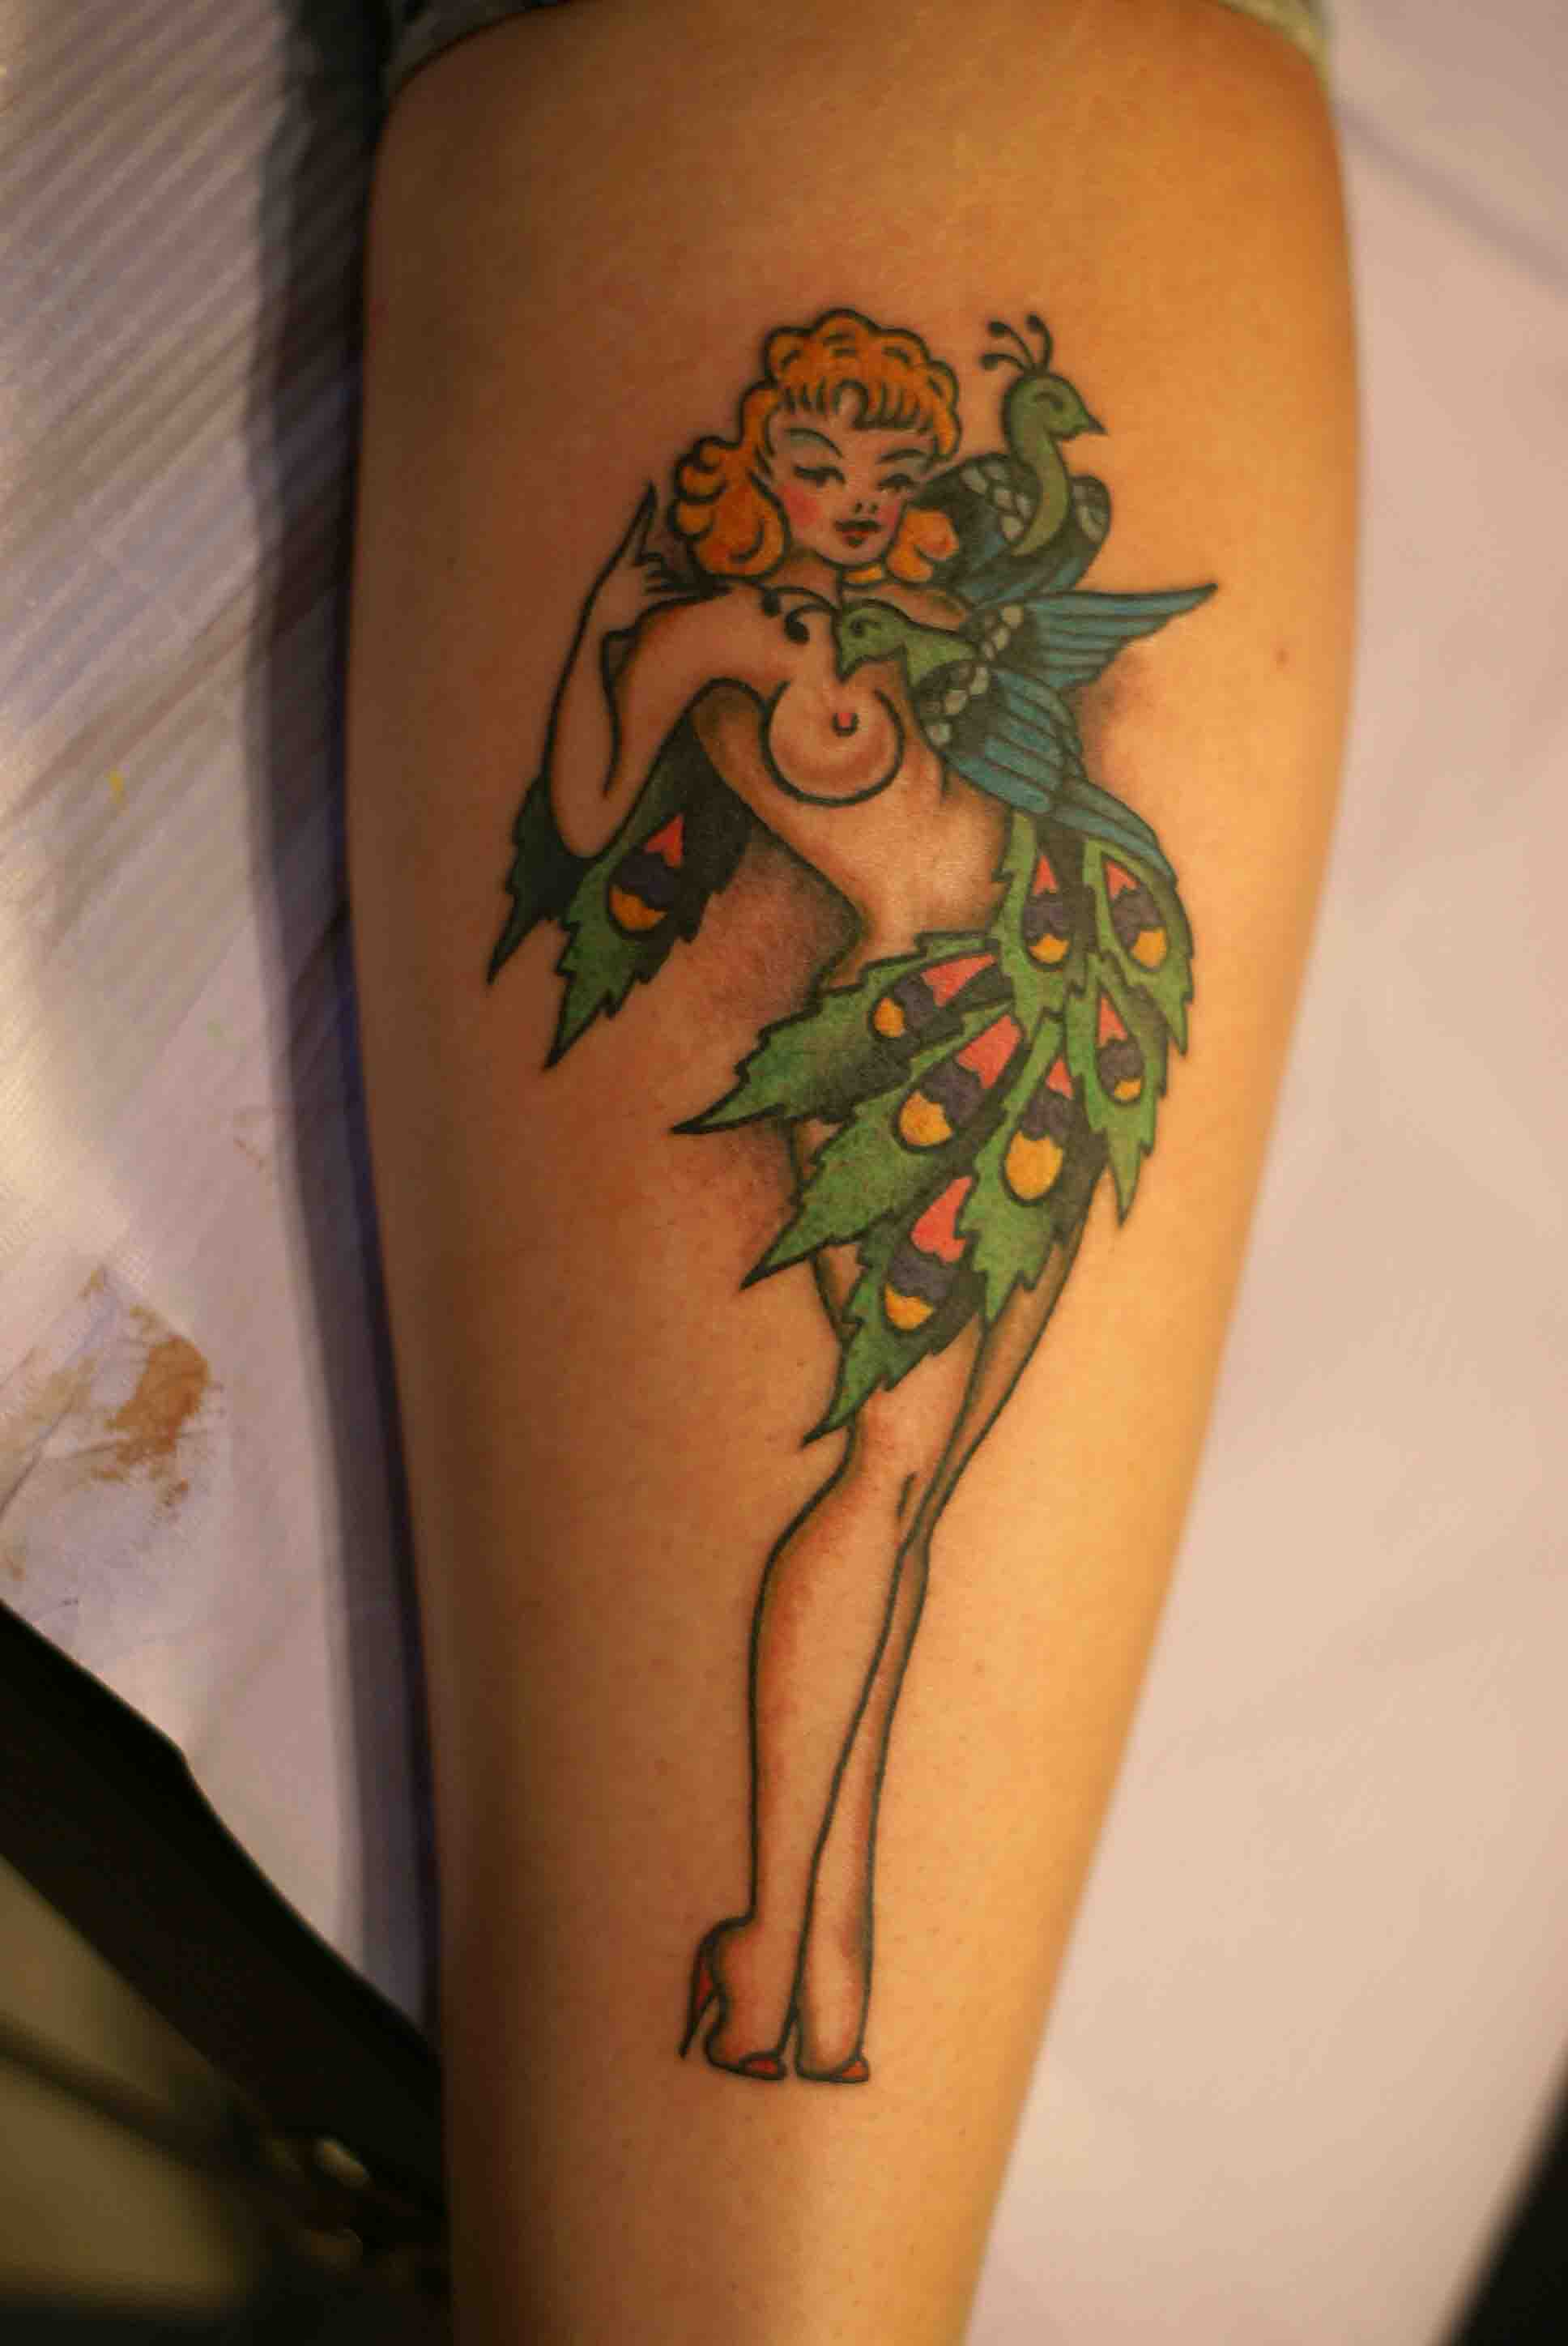 sailor jerry pin up girl tattoo designs